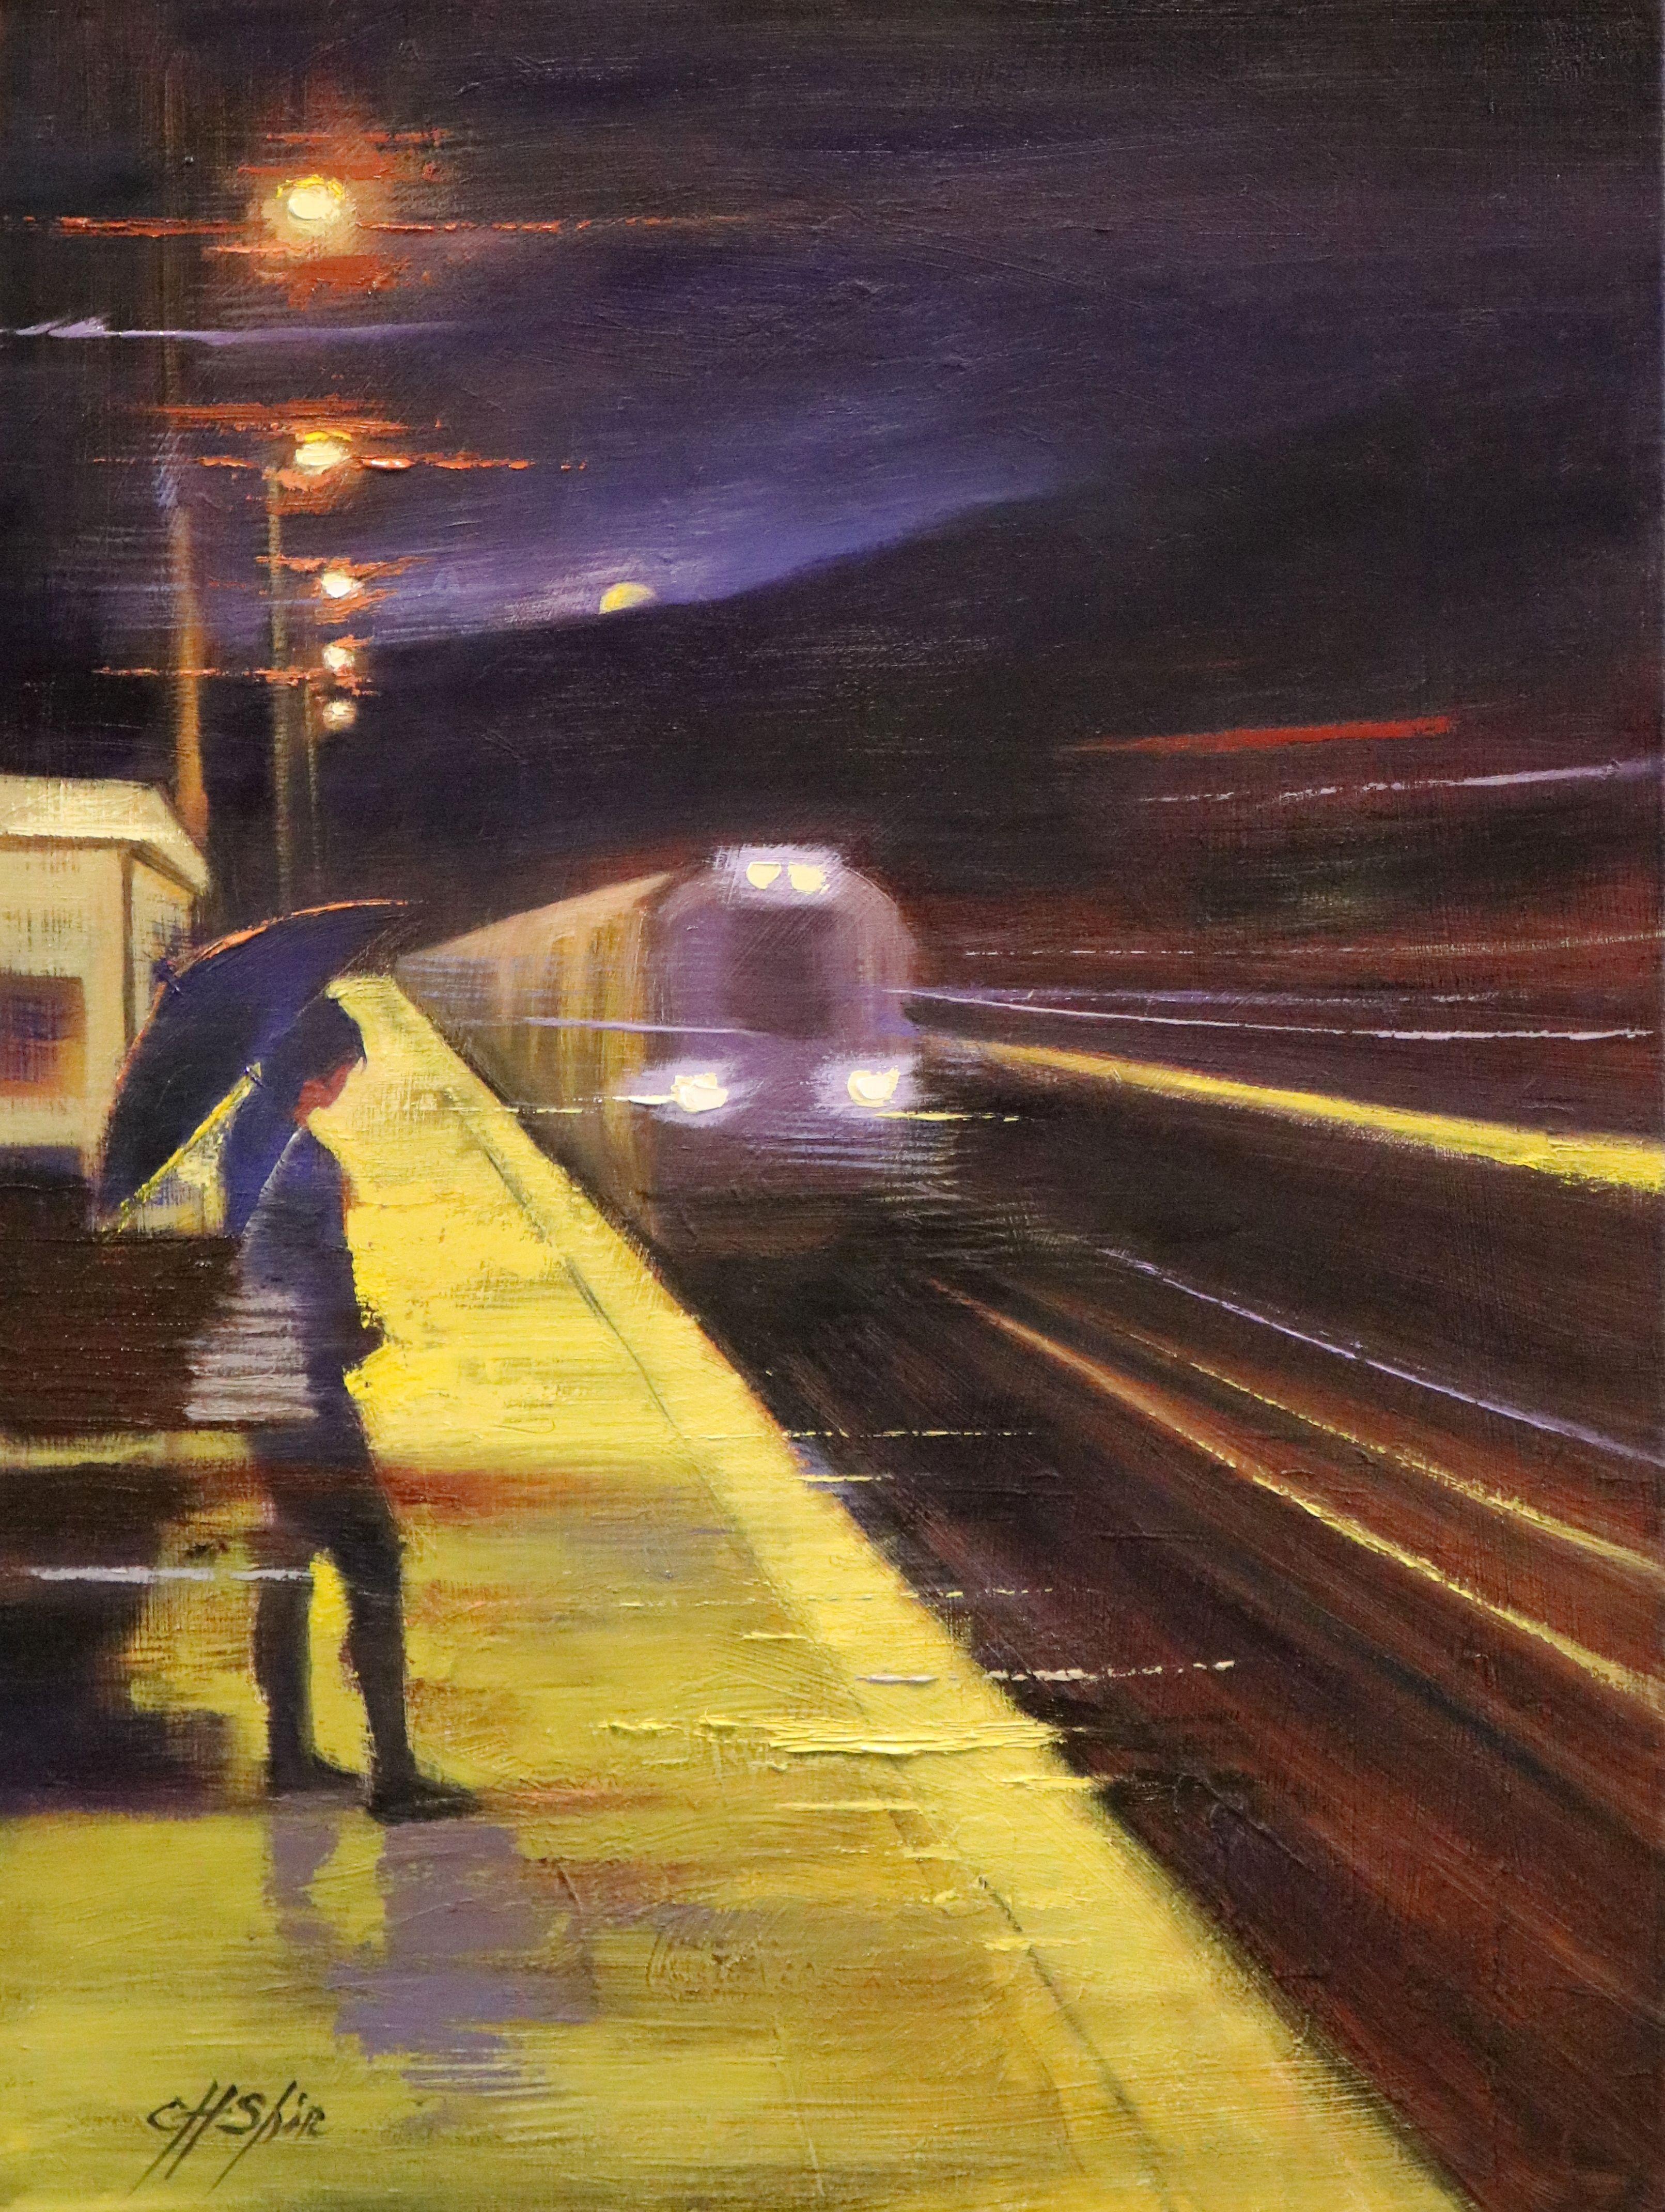 Train de nuit, peinture à l'huile sur toile - Painting de Chin H Shin